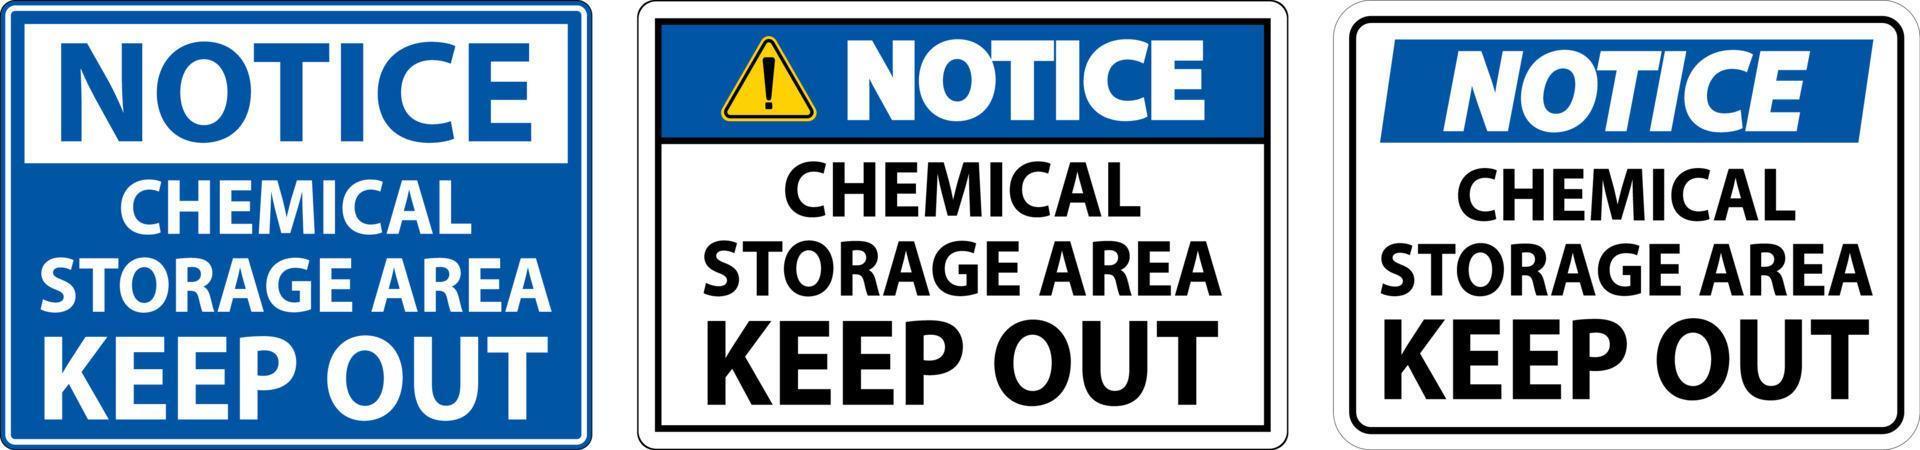 etiqueta de aviso zona de almacenamiento de productos químicos mantener fuera firmar vector